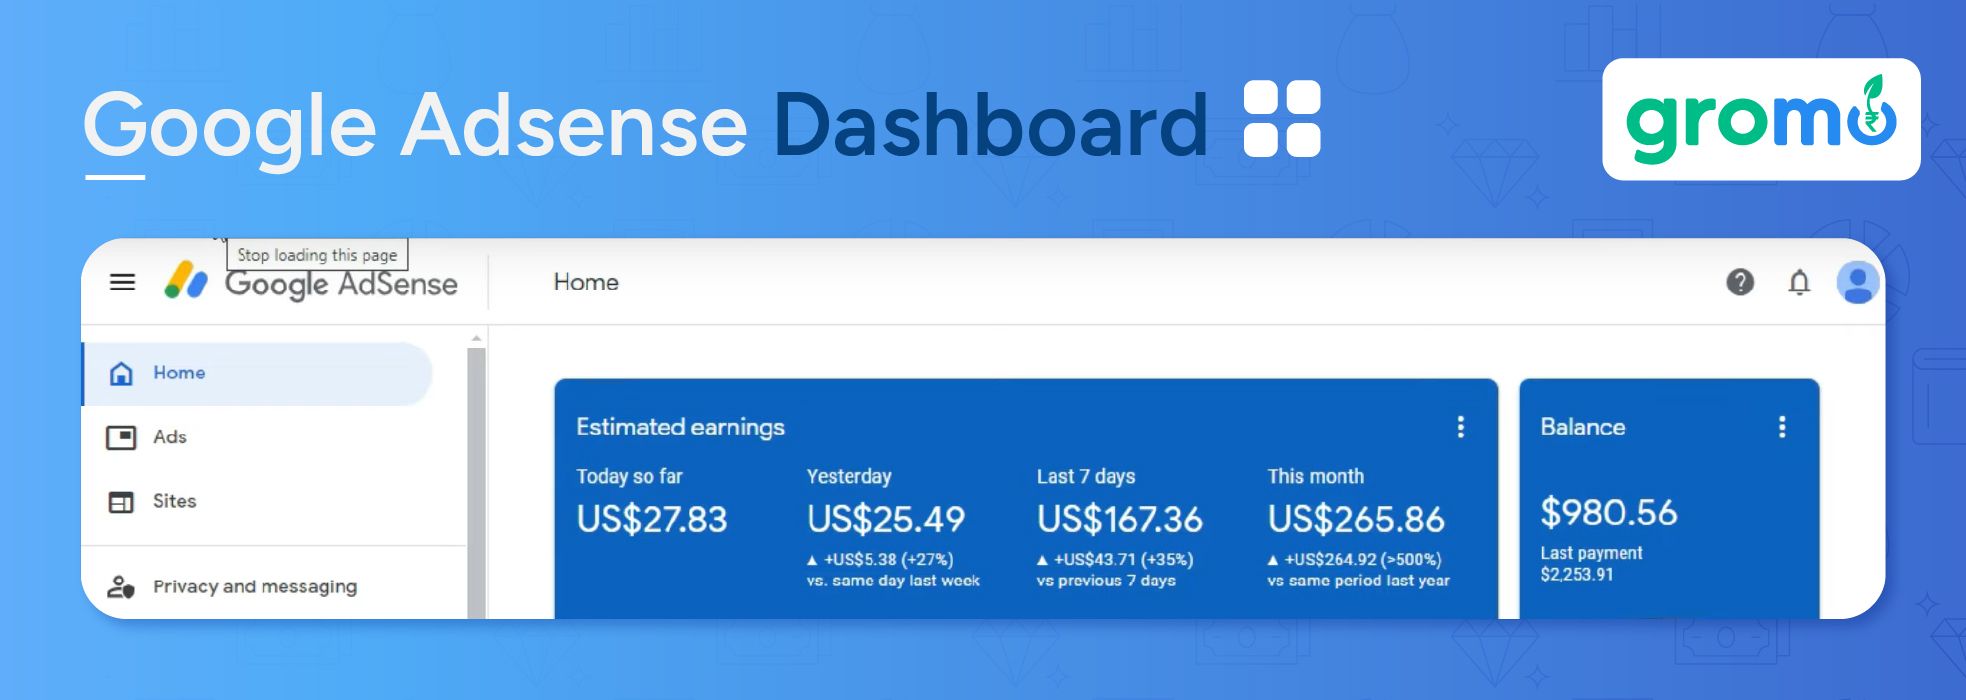 Google Adsense Dashboard - Best Ways to Make Money Online - GroMo